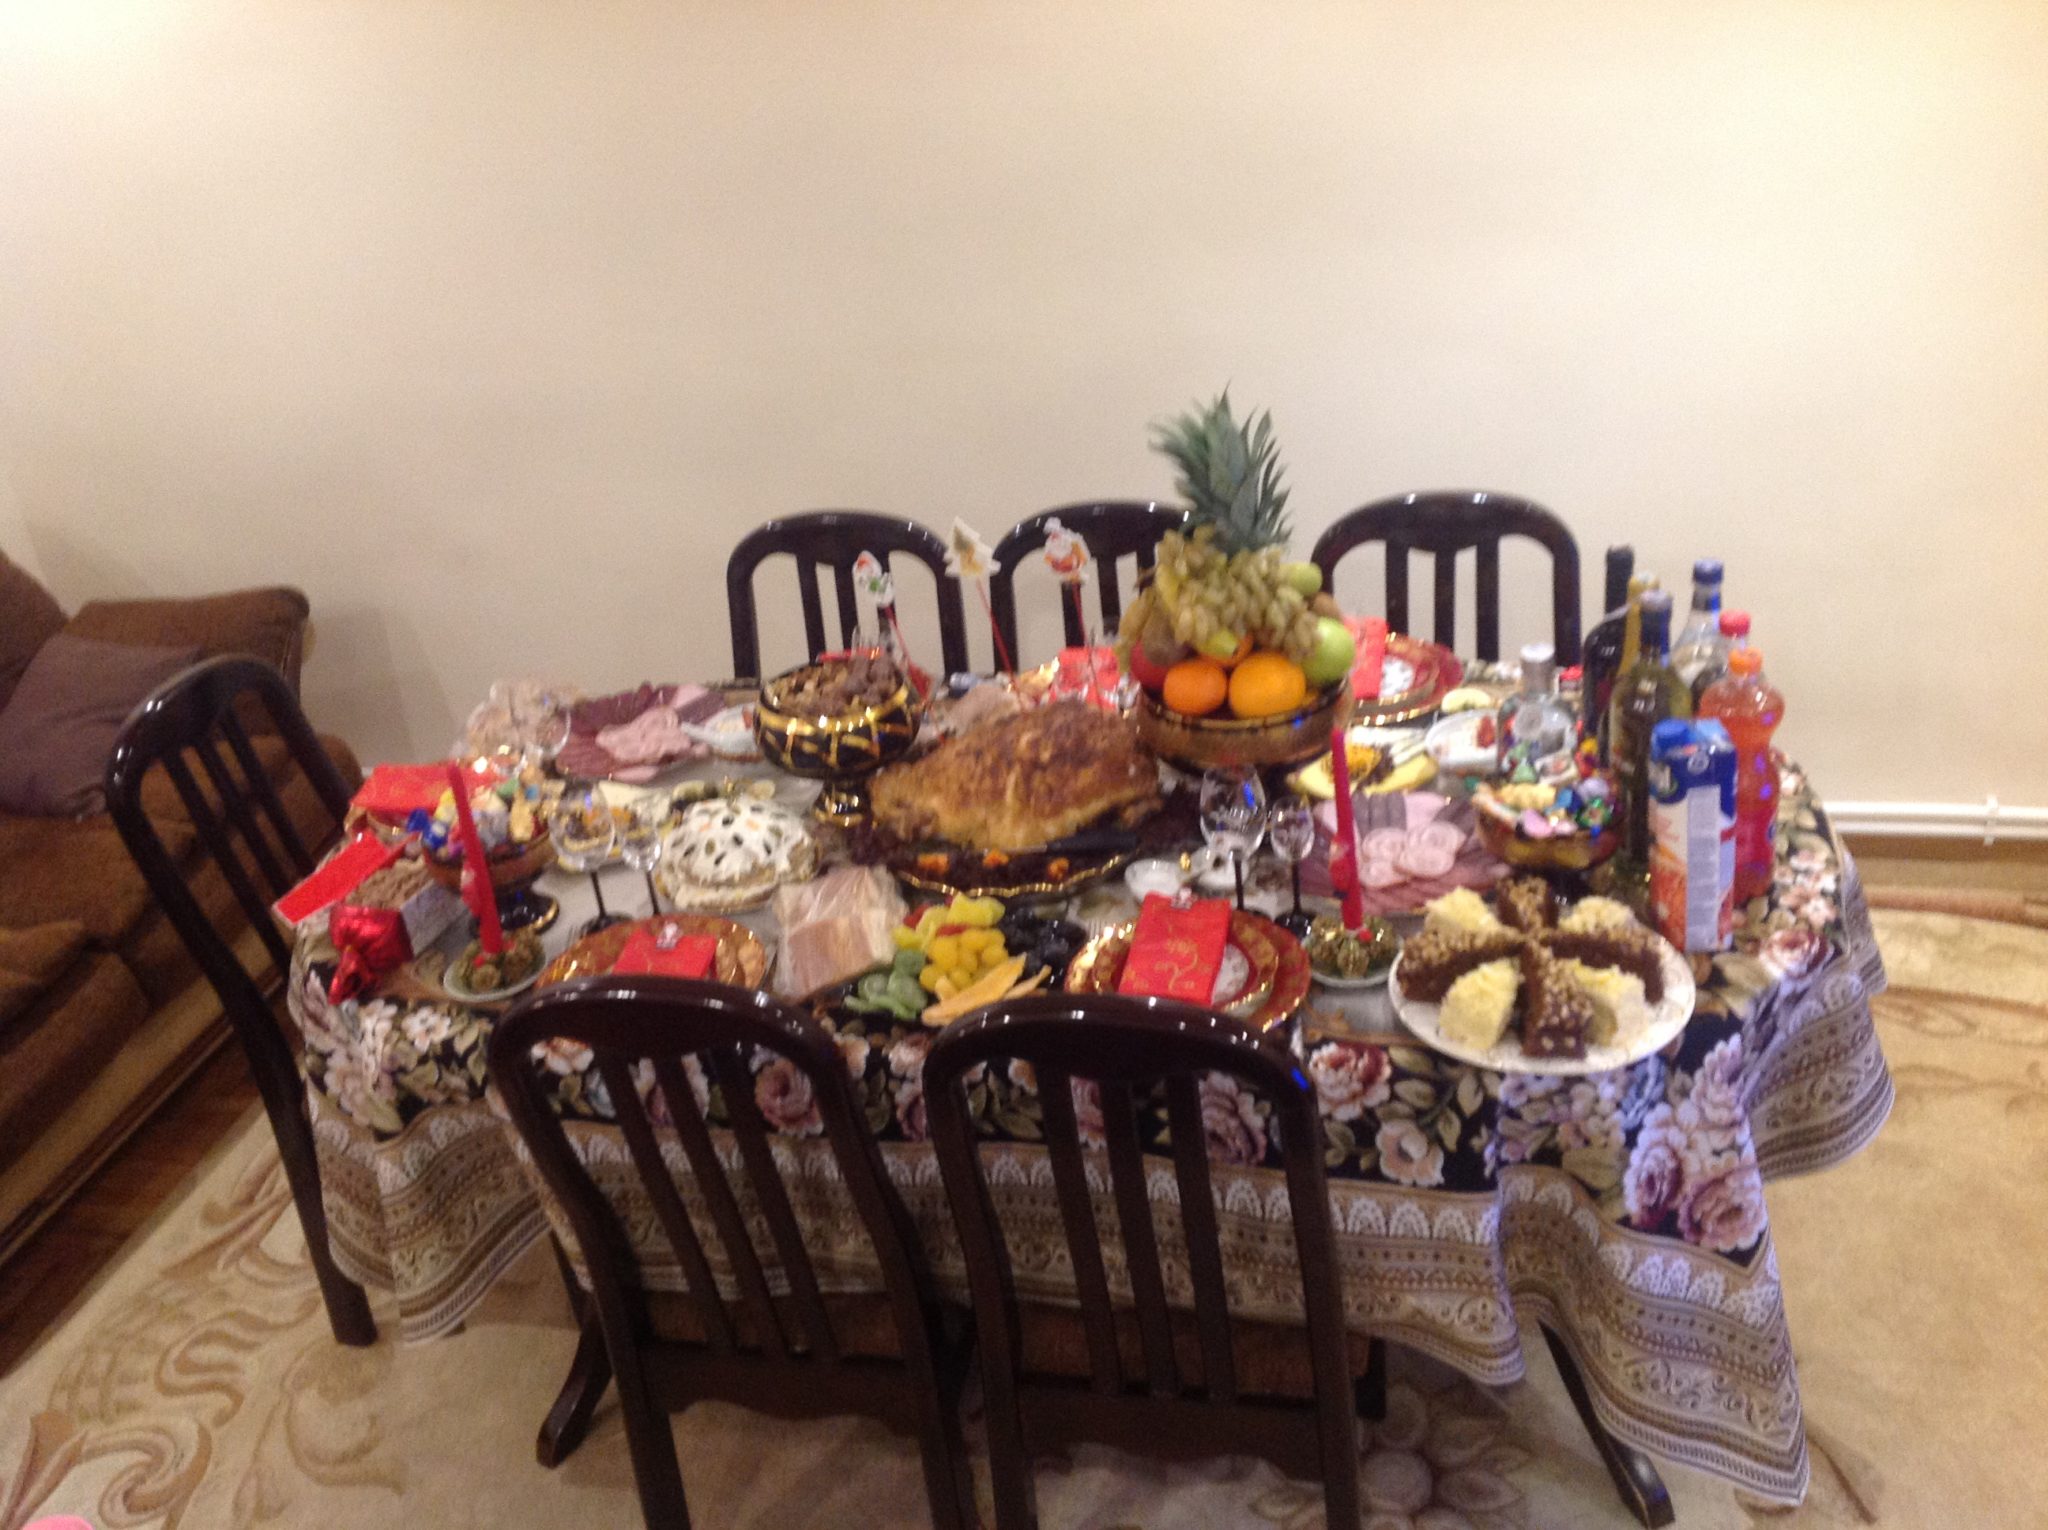 New Year Table in Armenia iArmenia Armenian History, Holidays